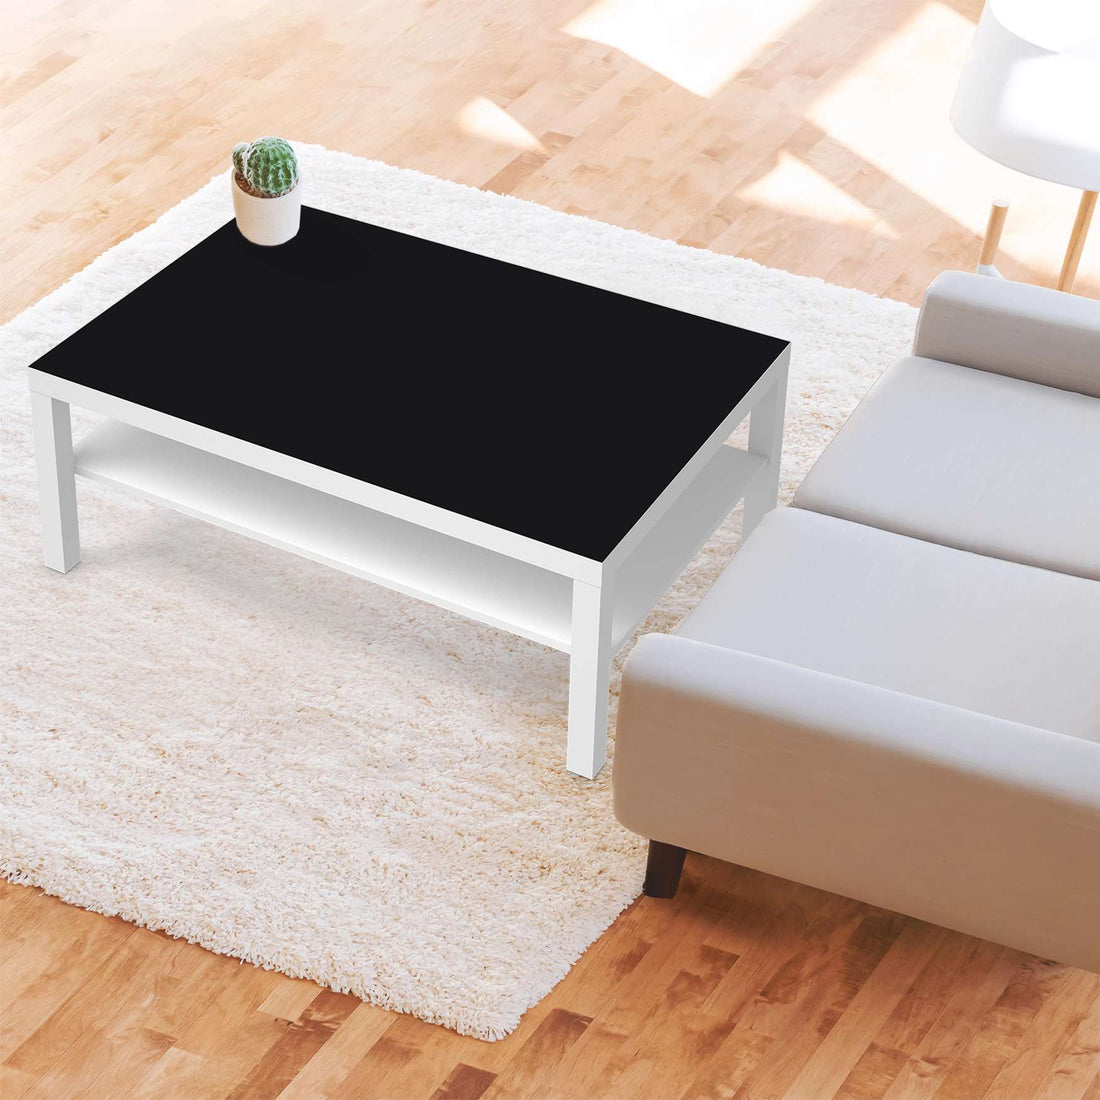 Klebefolie Schwarz - IKEA Lack Tisch 118x78 cm - Wohnzimmer